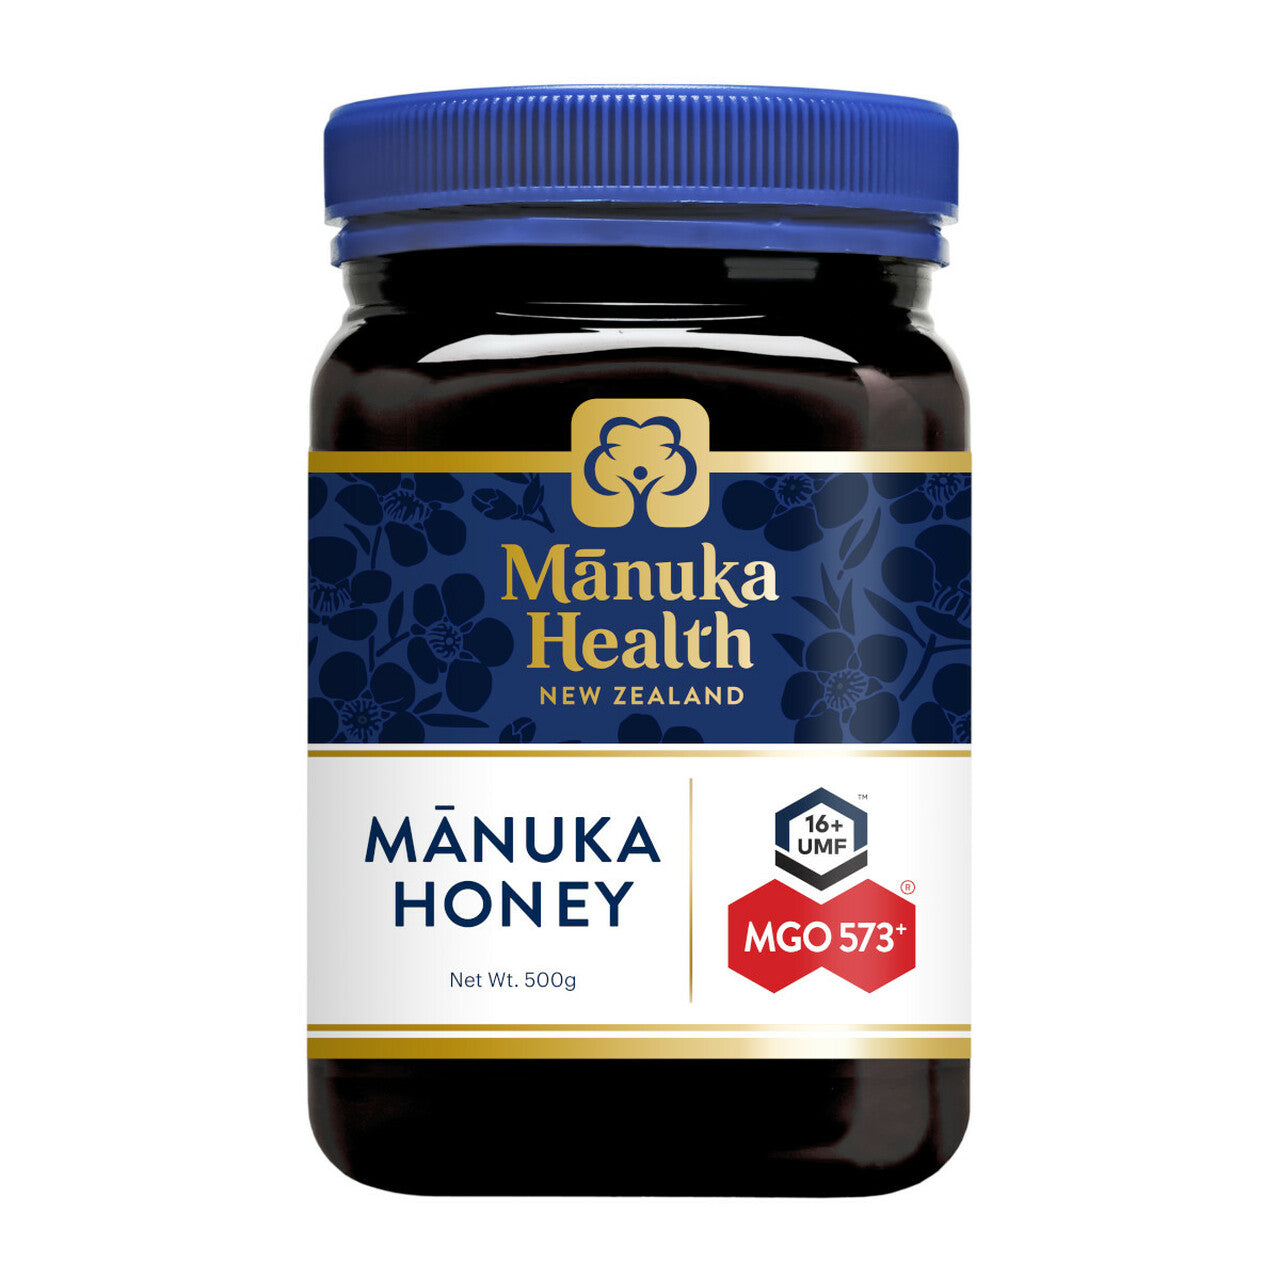 Manuka Health Manuka Honey MGO 573+ (UMF 16+) 500g.